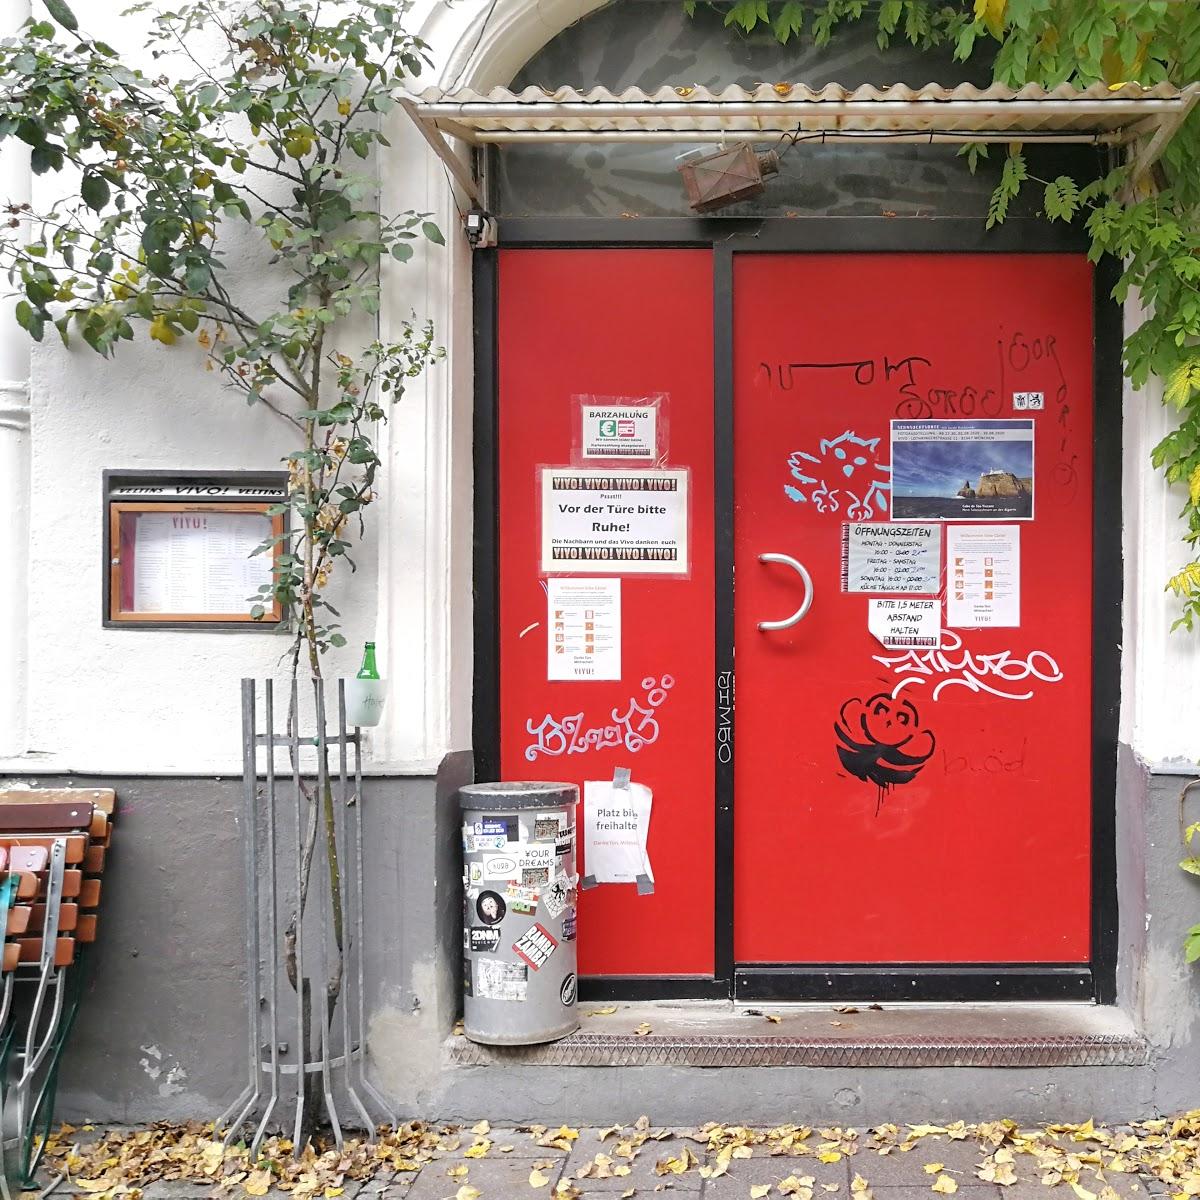 Restaurant "Vivo" in München